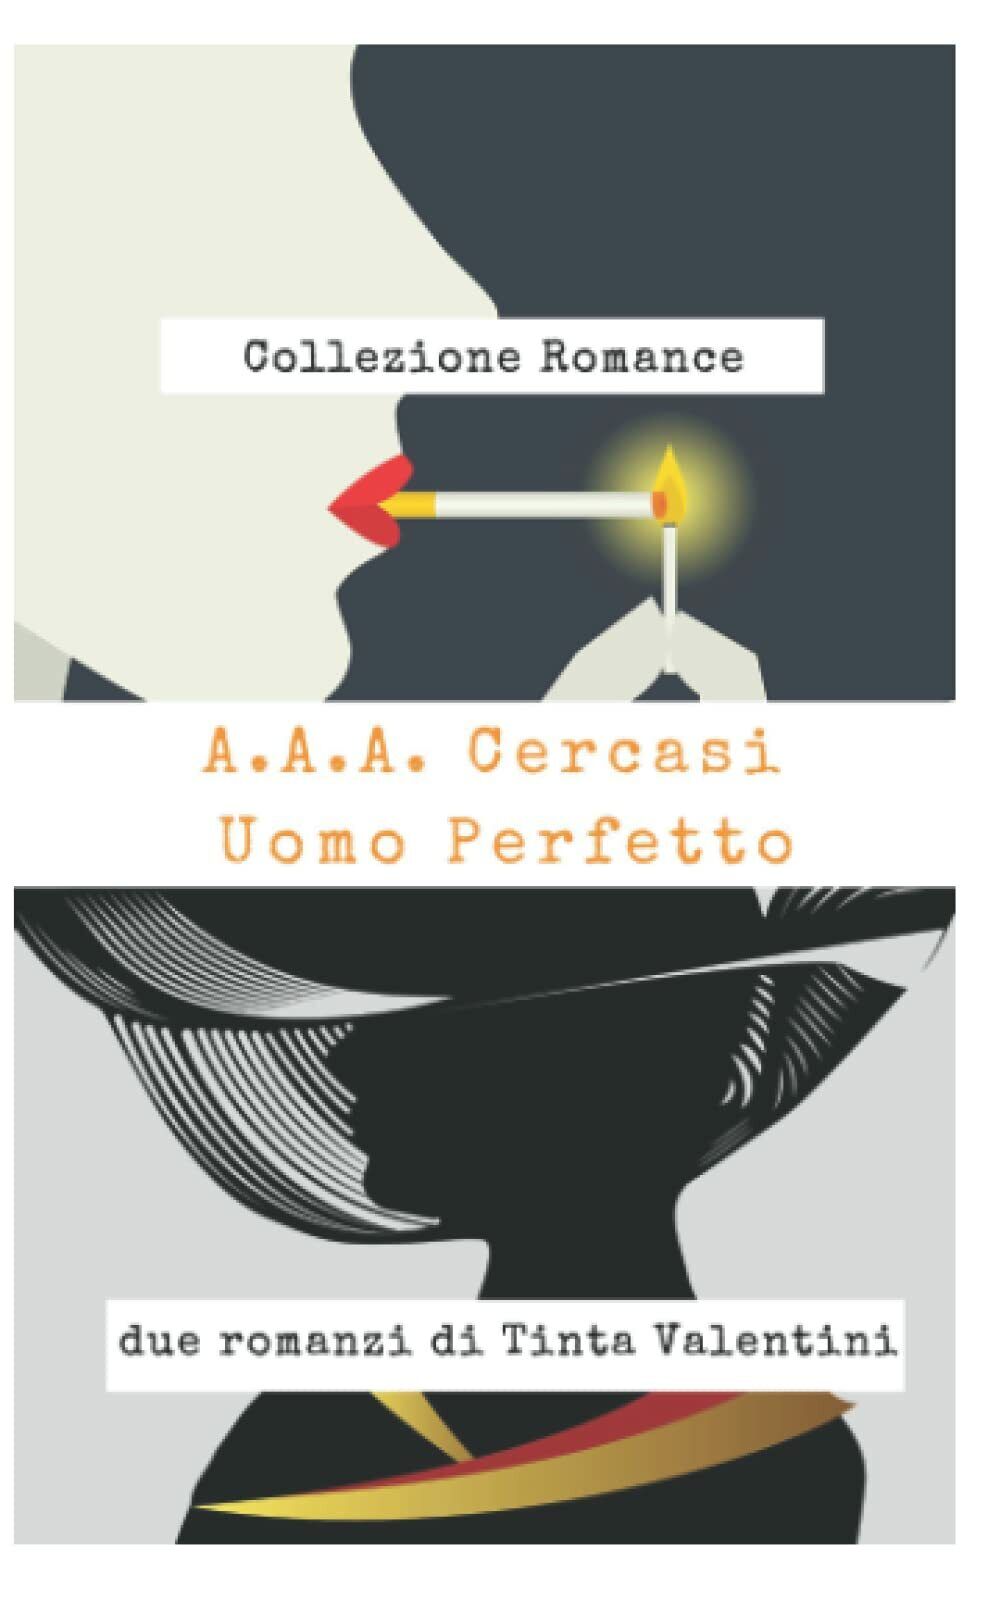 A.A.A. Cercasi uomo perfetto: Collezione romance - due romanzi di Tinta Valentin